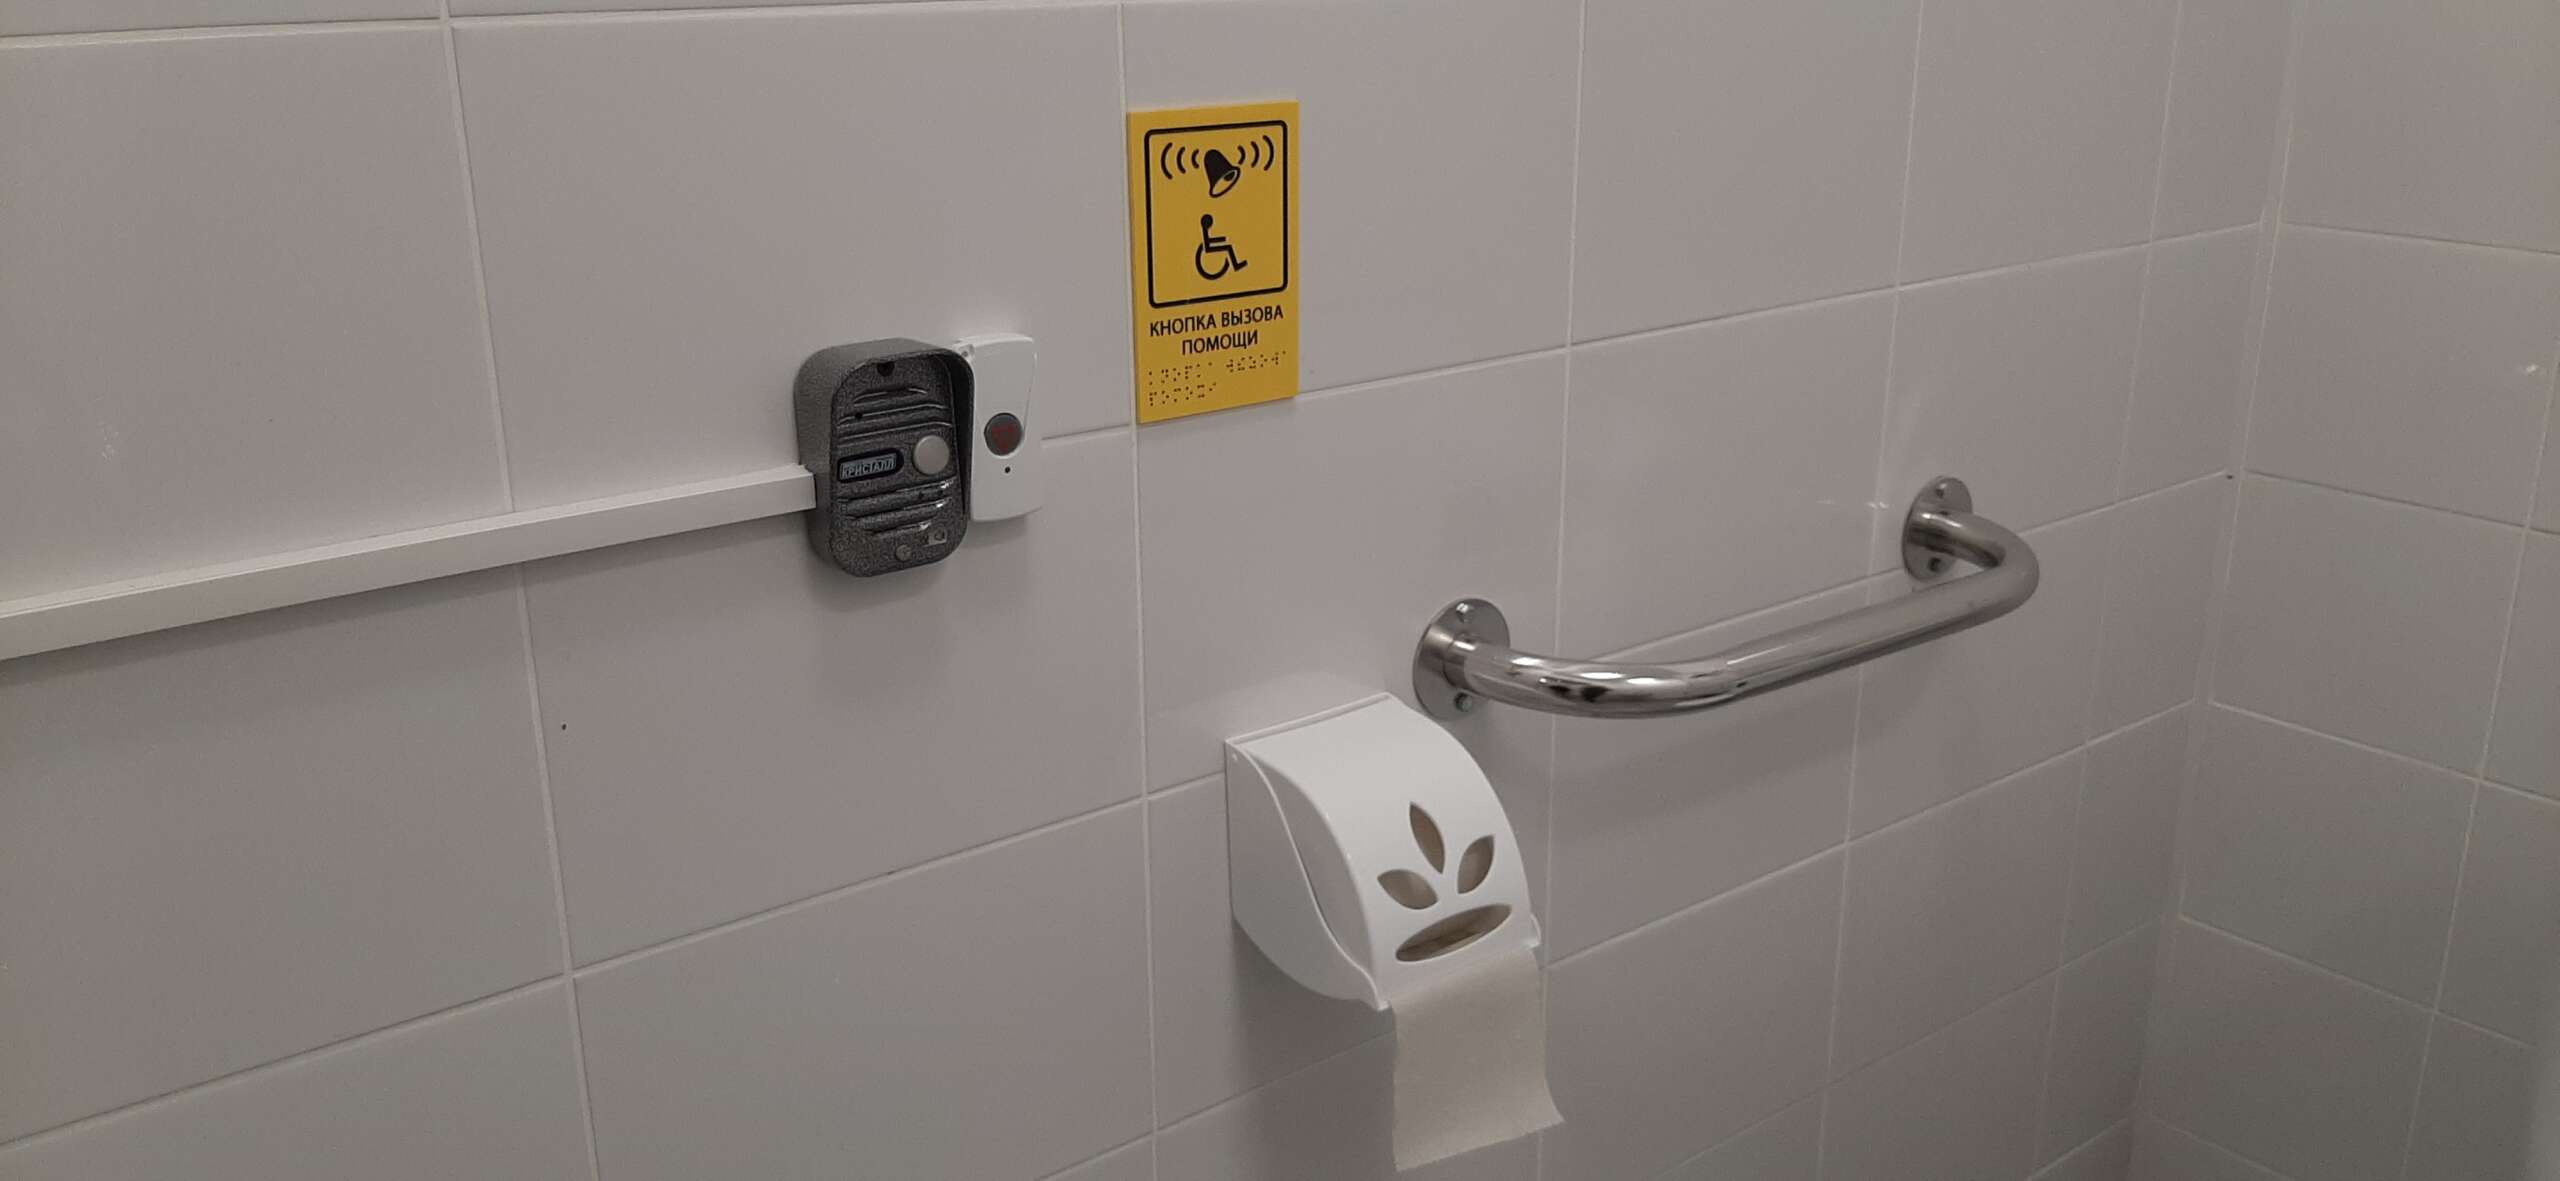 Кнопка вызова помощи в туалете МГН, табличка на контрастном фоне, дублирующая азбука Брайля